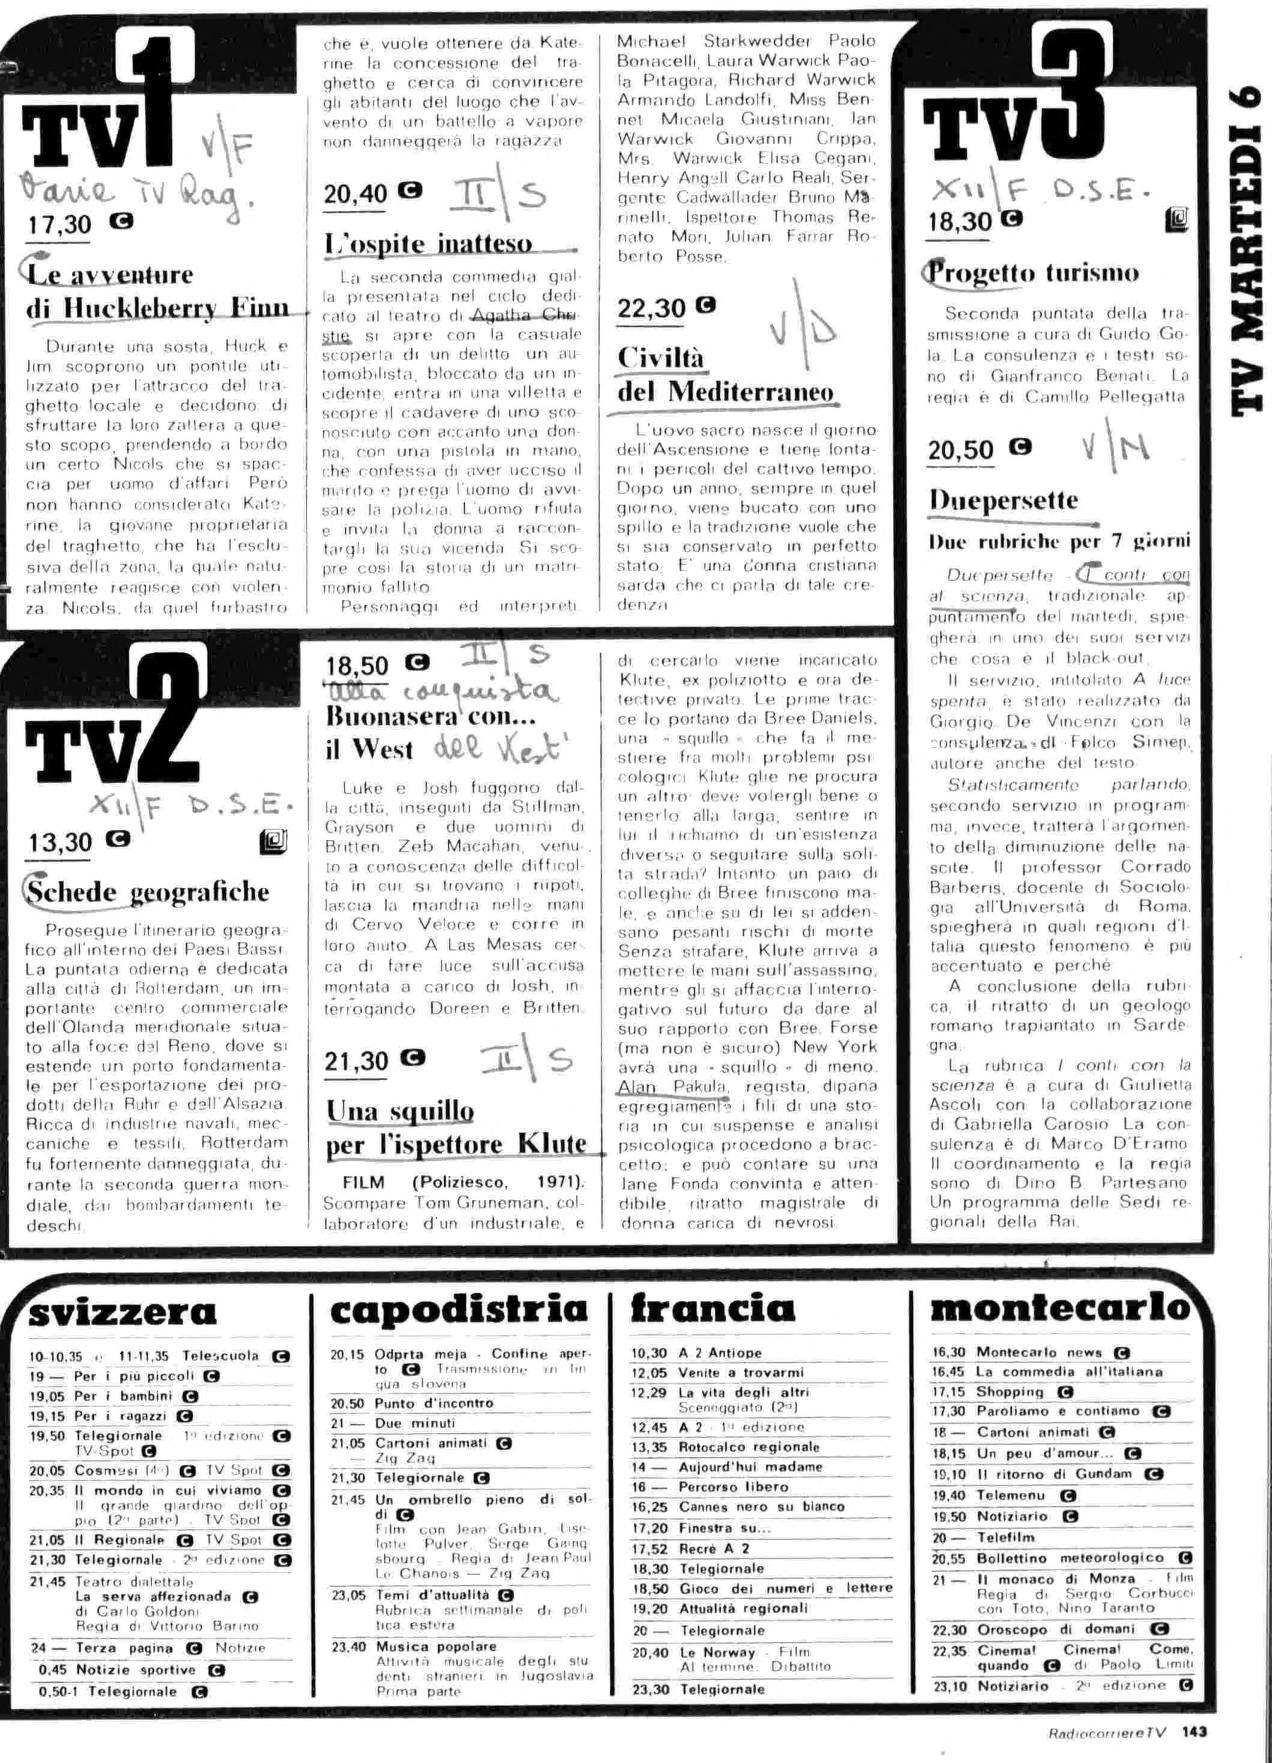 RC-1980-19_0142.jp2&id=Radiocorriere-198